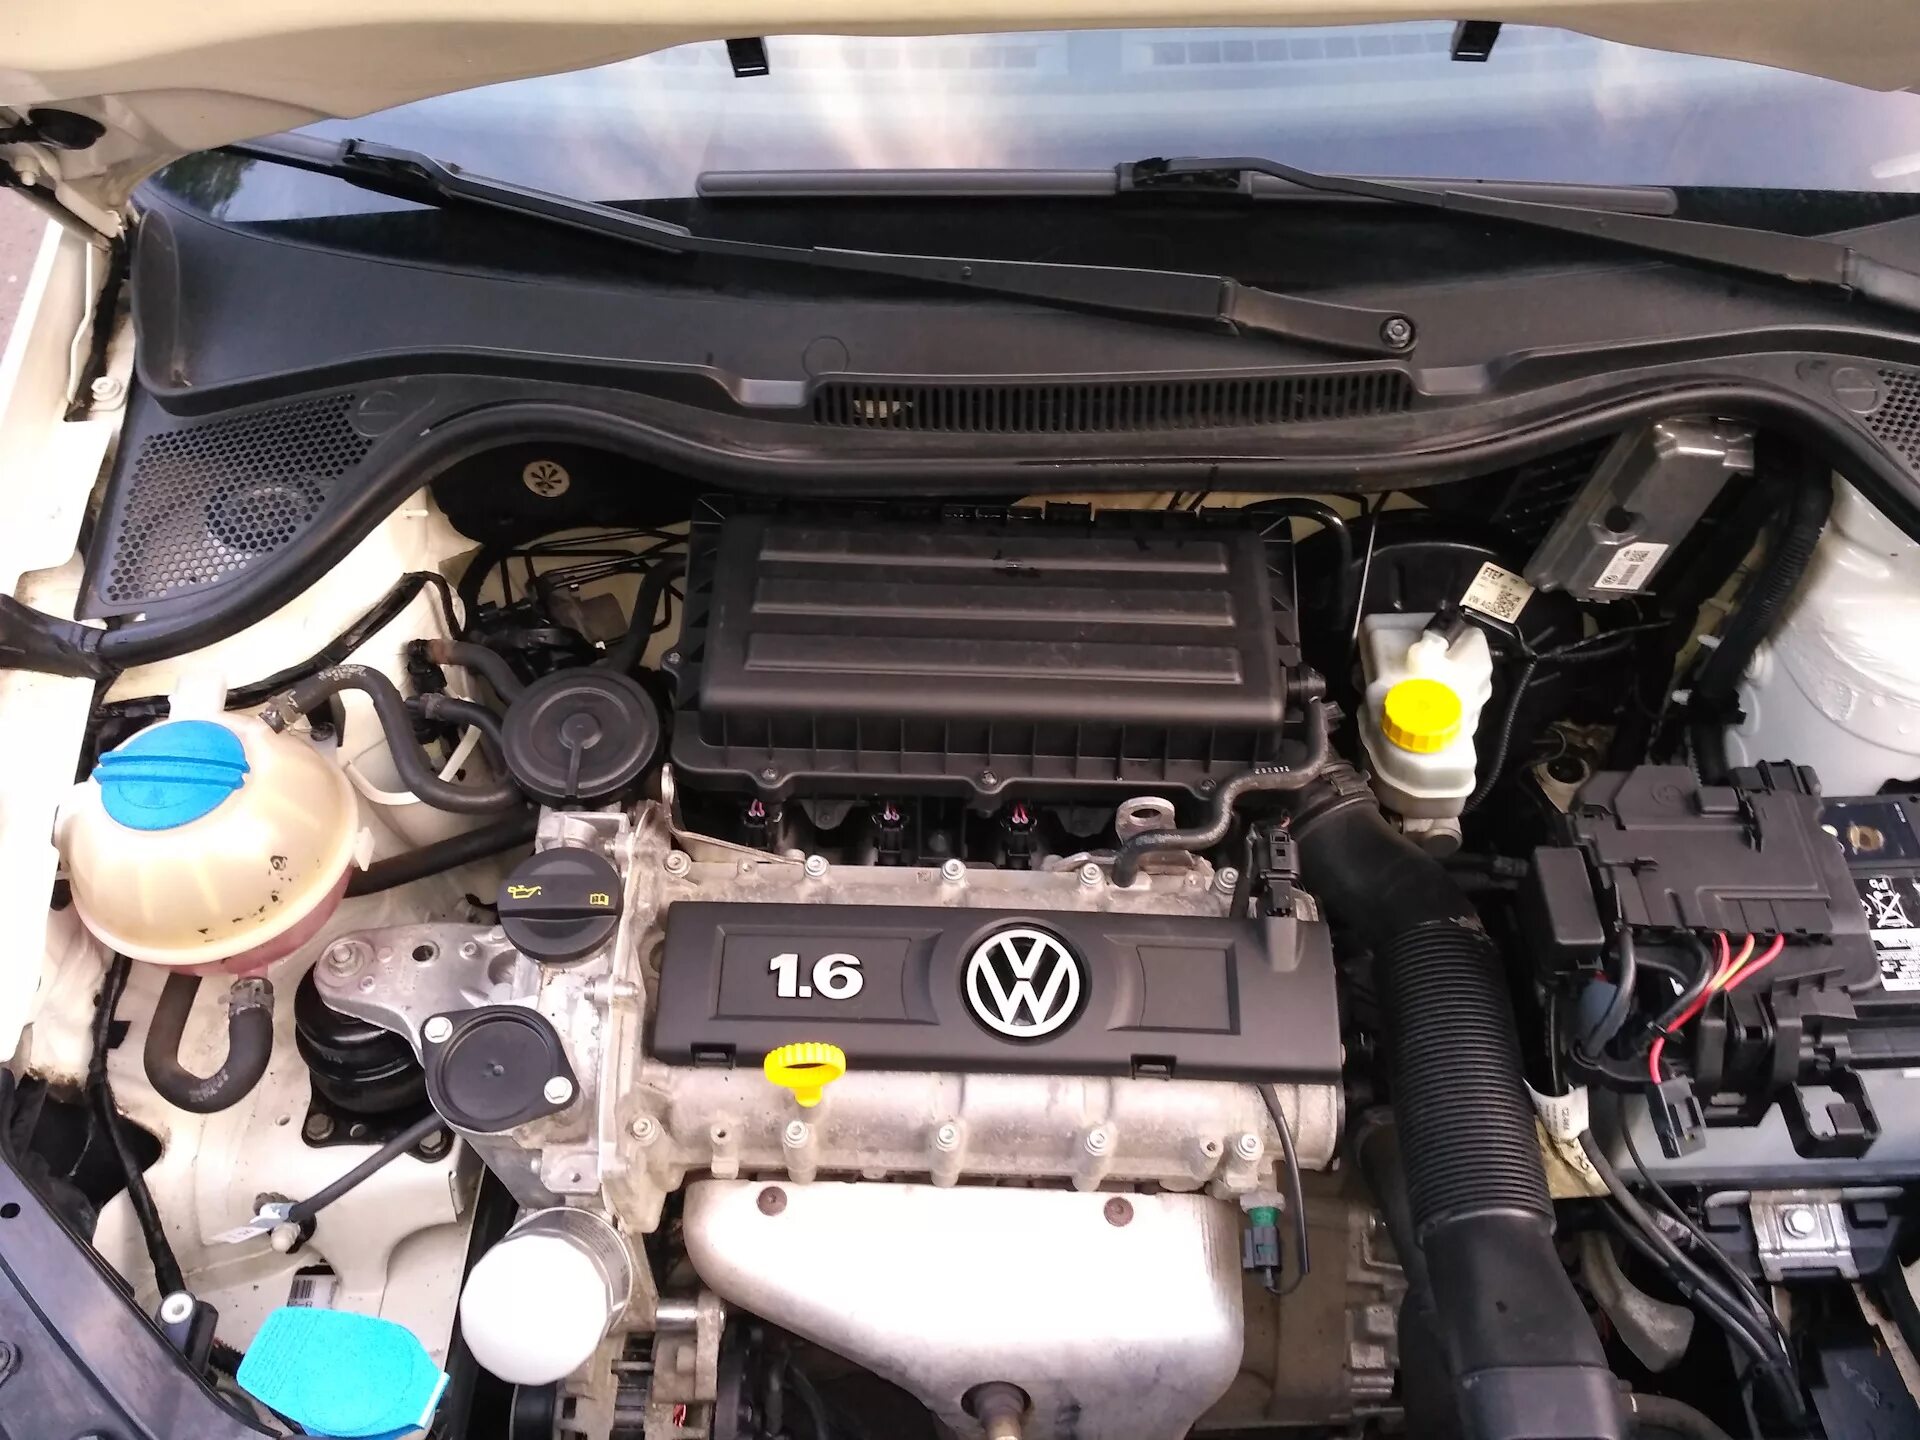 Wv polo 1.6. Мотор поло седан 1.6 105 л.с. Фольксваген поло ДВС 1.6. Двигатель Volkswagen Polo sedan 1.6. Двигатель поло седан 1.6 105.